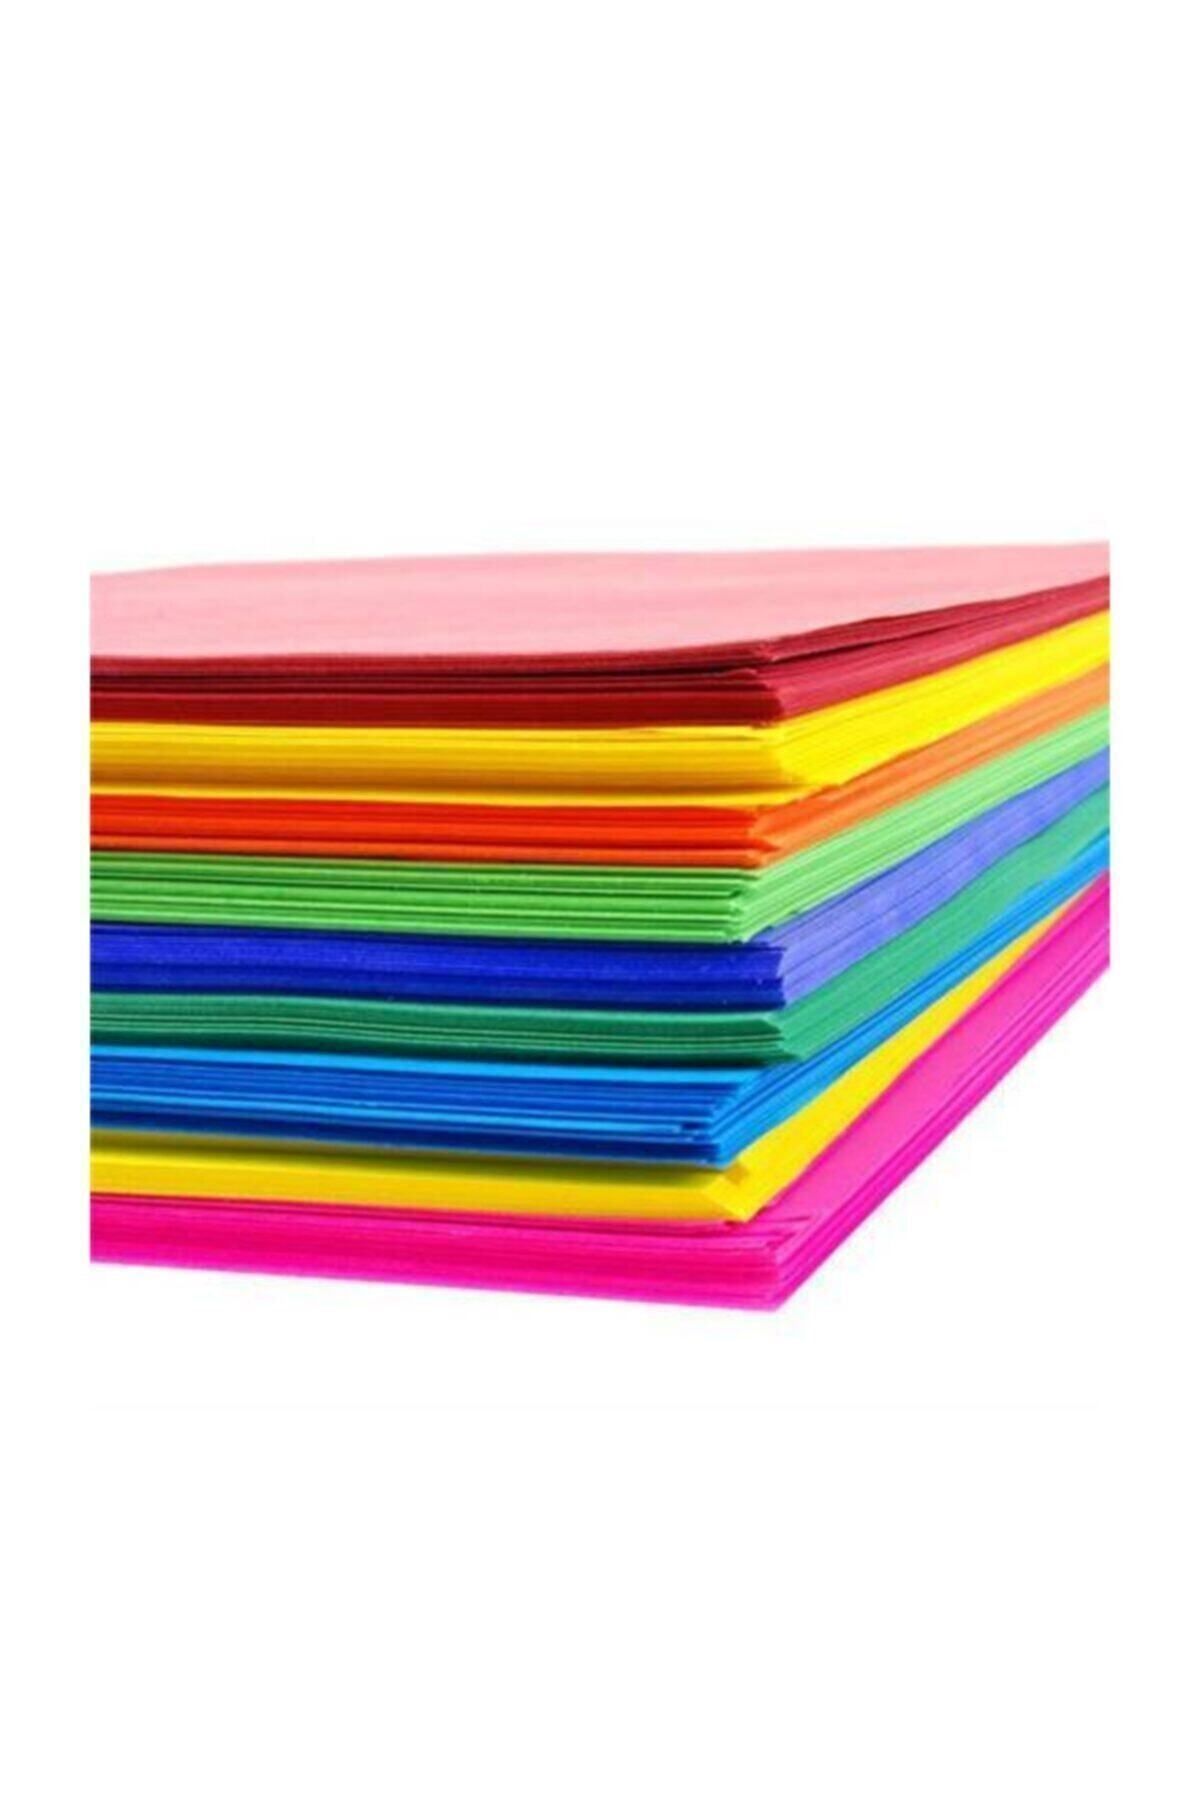 Zirve Renkli Fotokopi Kağıdı 10 Renk 100 Lü A4